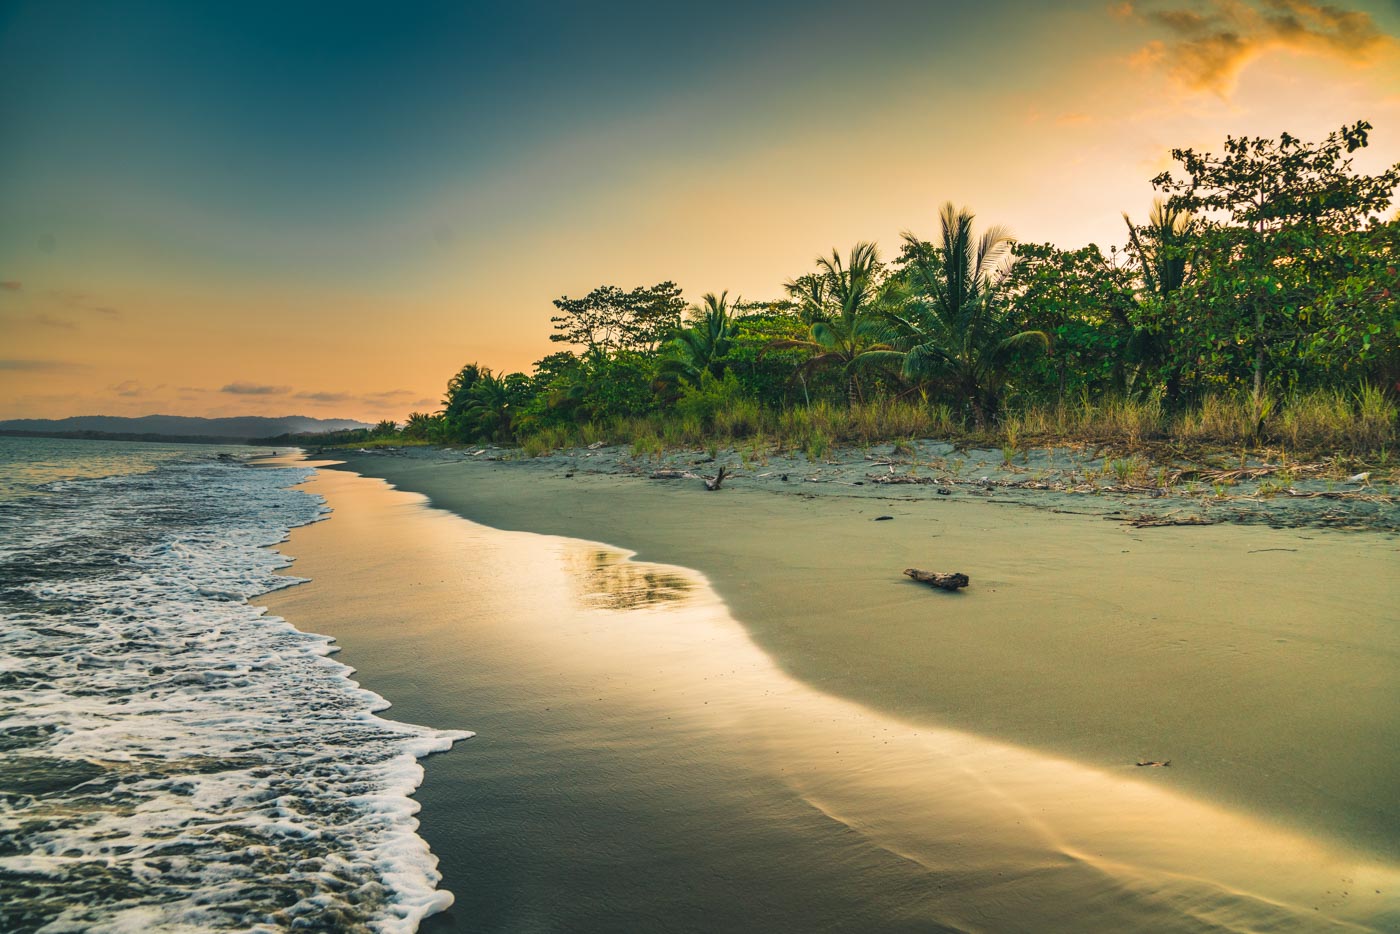 哥斯达黎加希门尼斯港:日落时分的海滩。Osa半岛